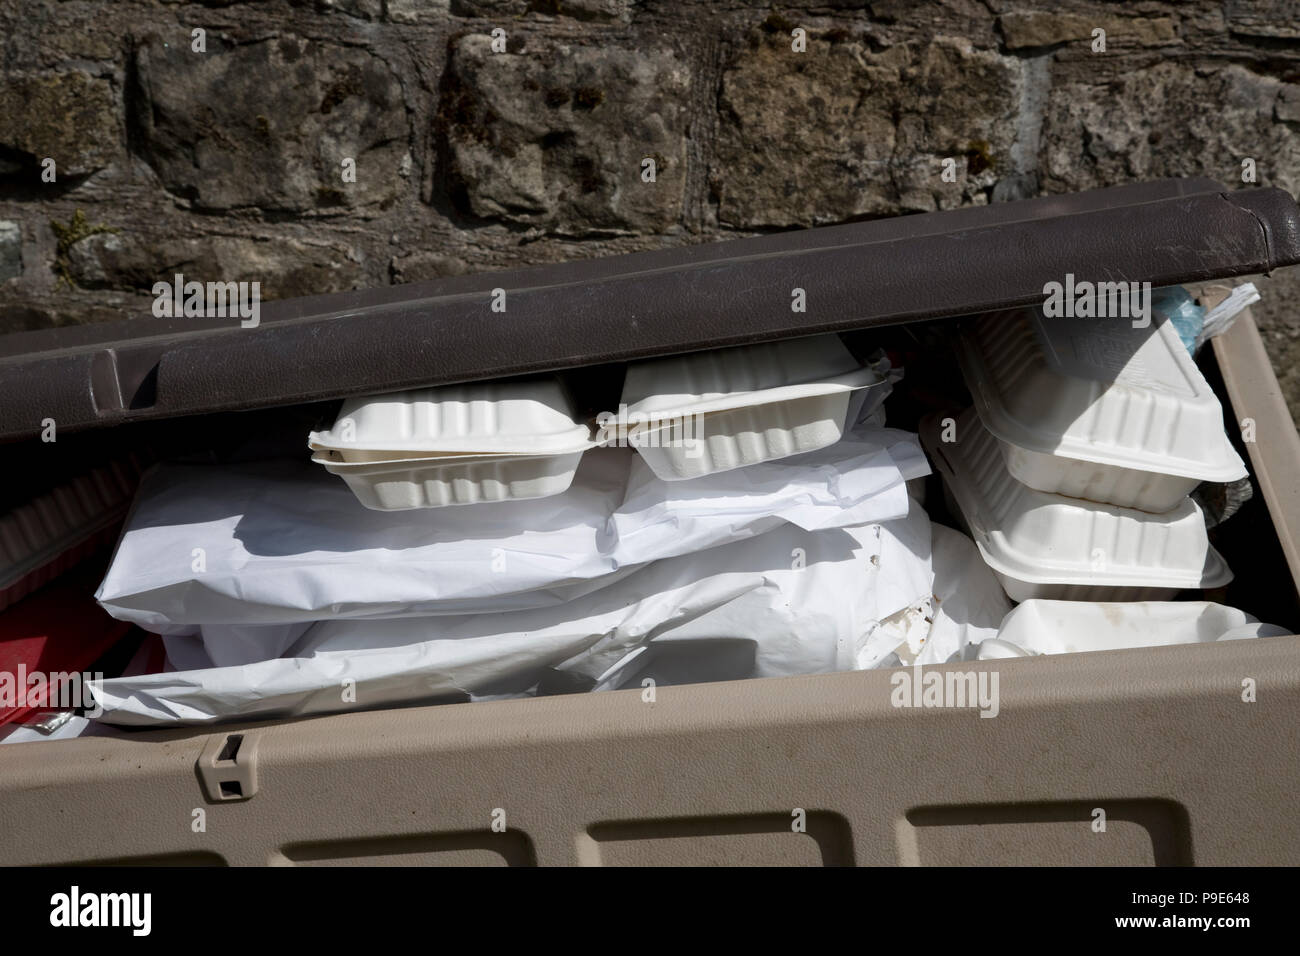 Discarded takeway food packaging in waste bin Scotlandand Stock Photo